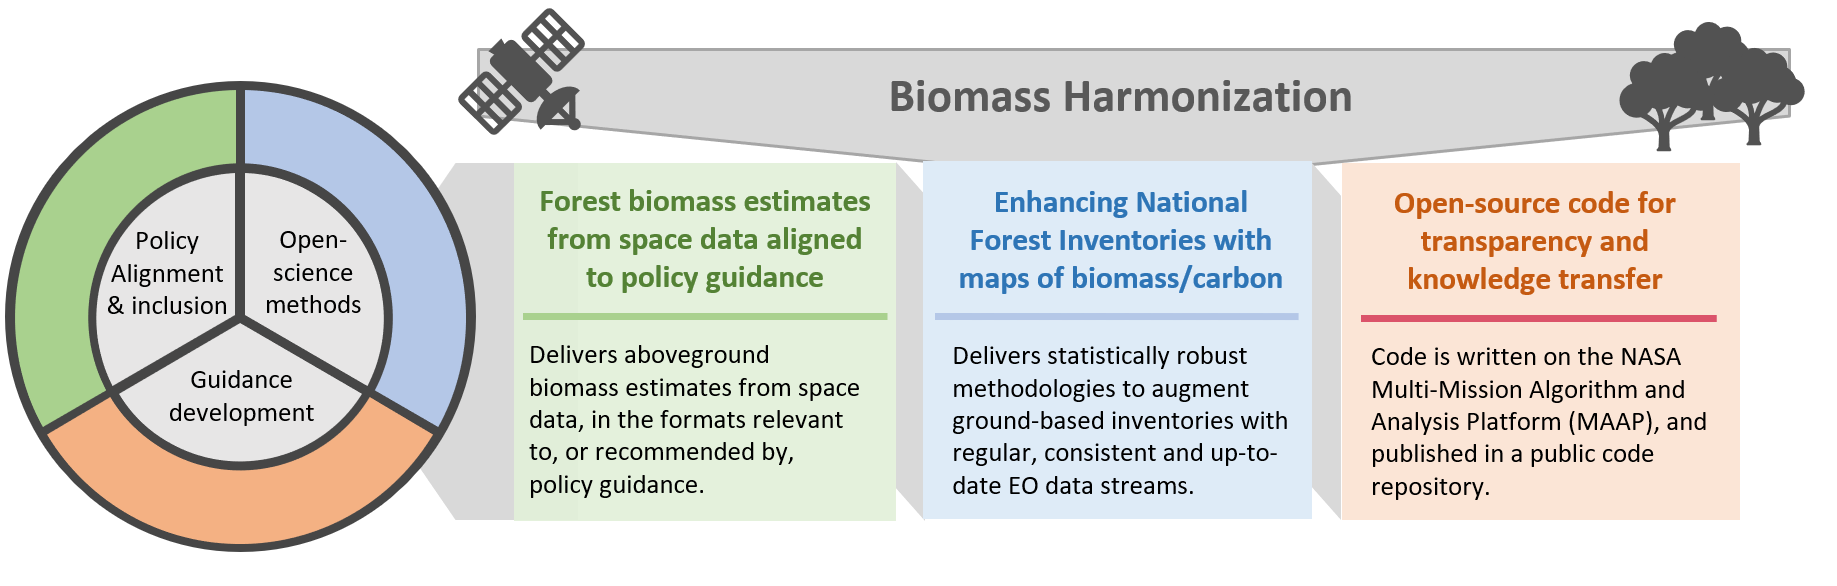 Biomass Harmonization estimates-inventories-open-sicnece